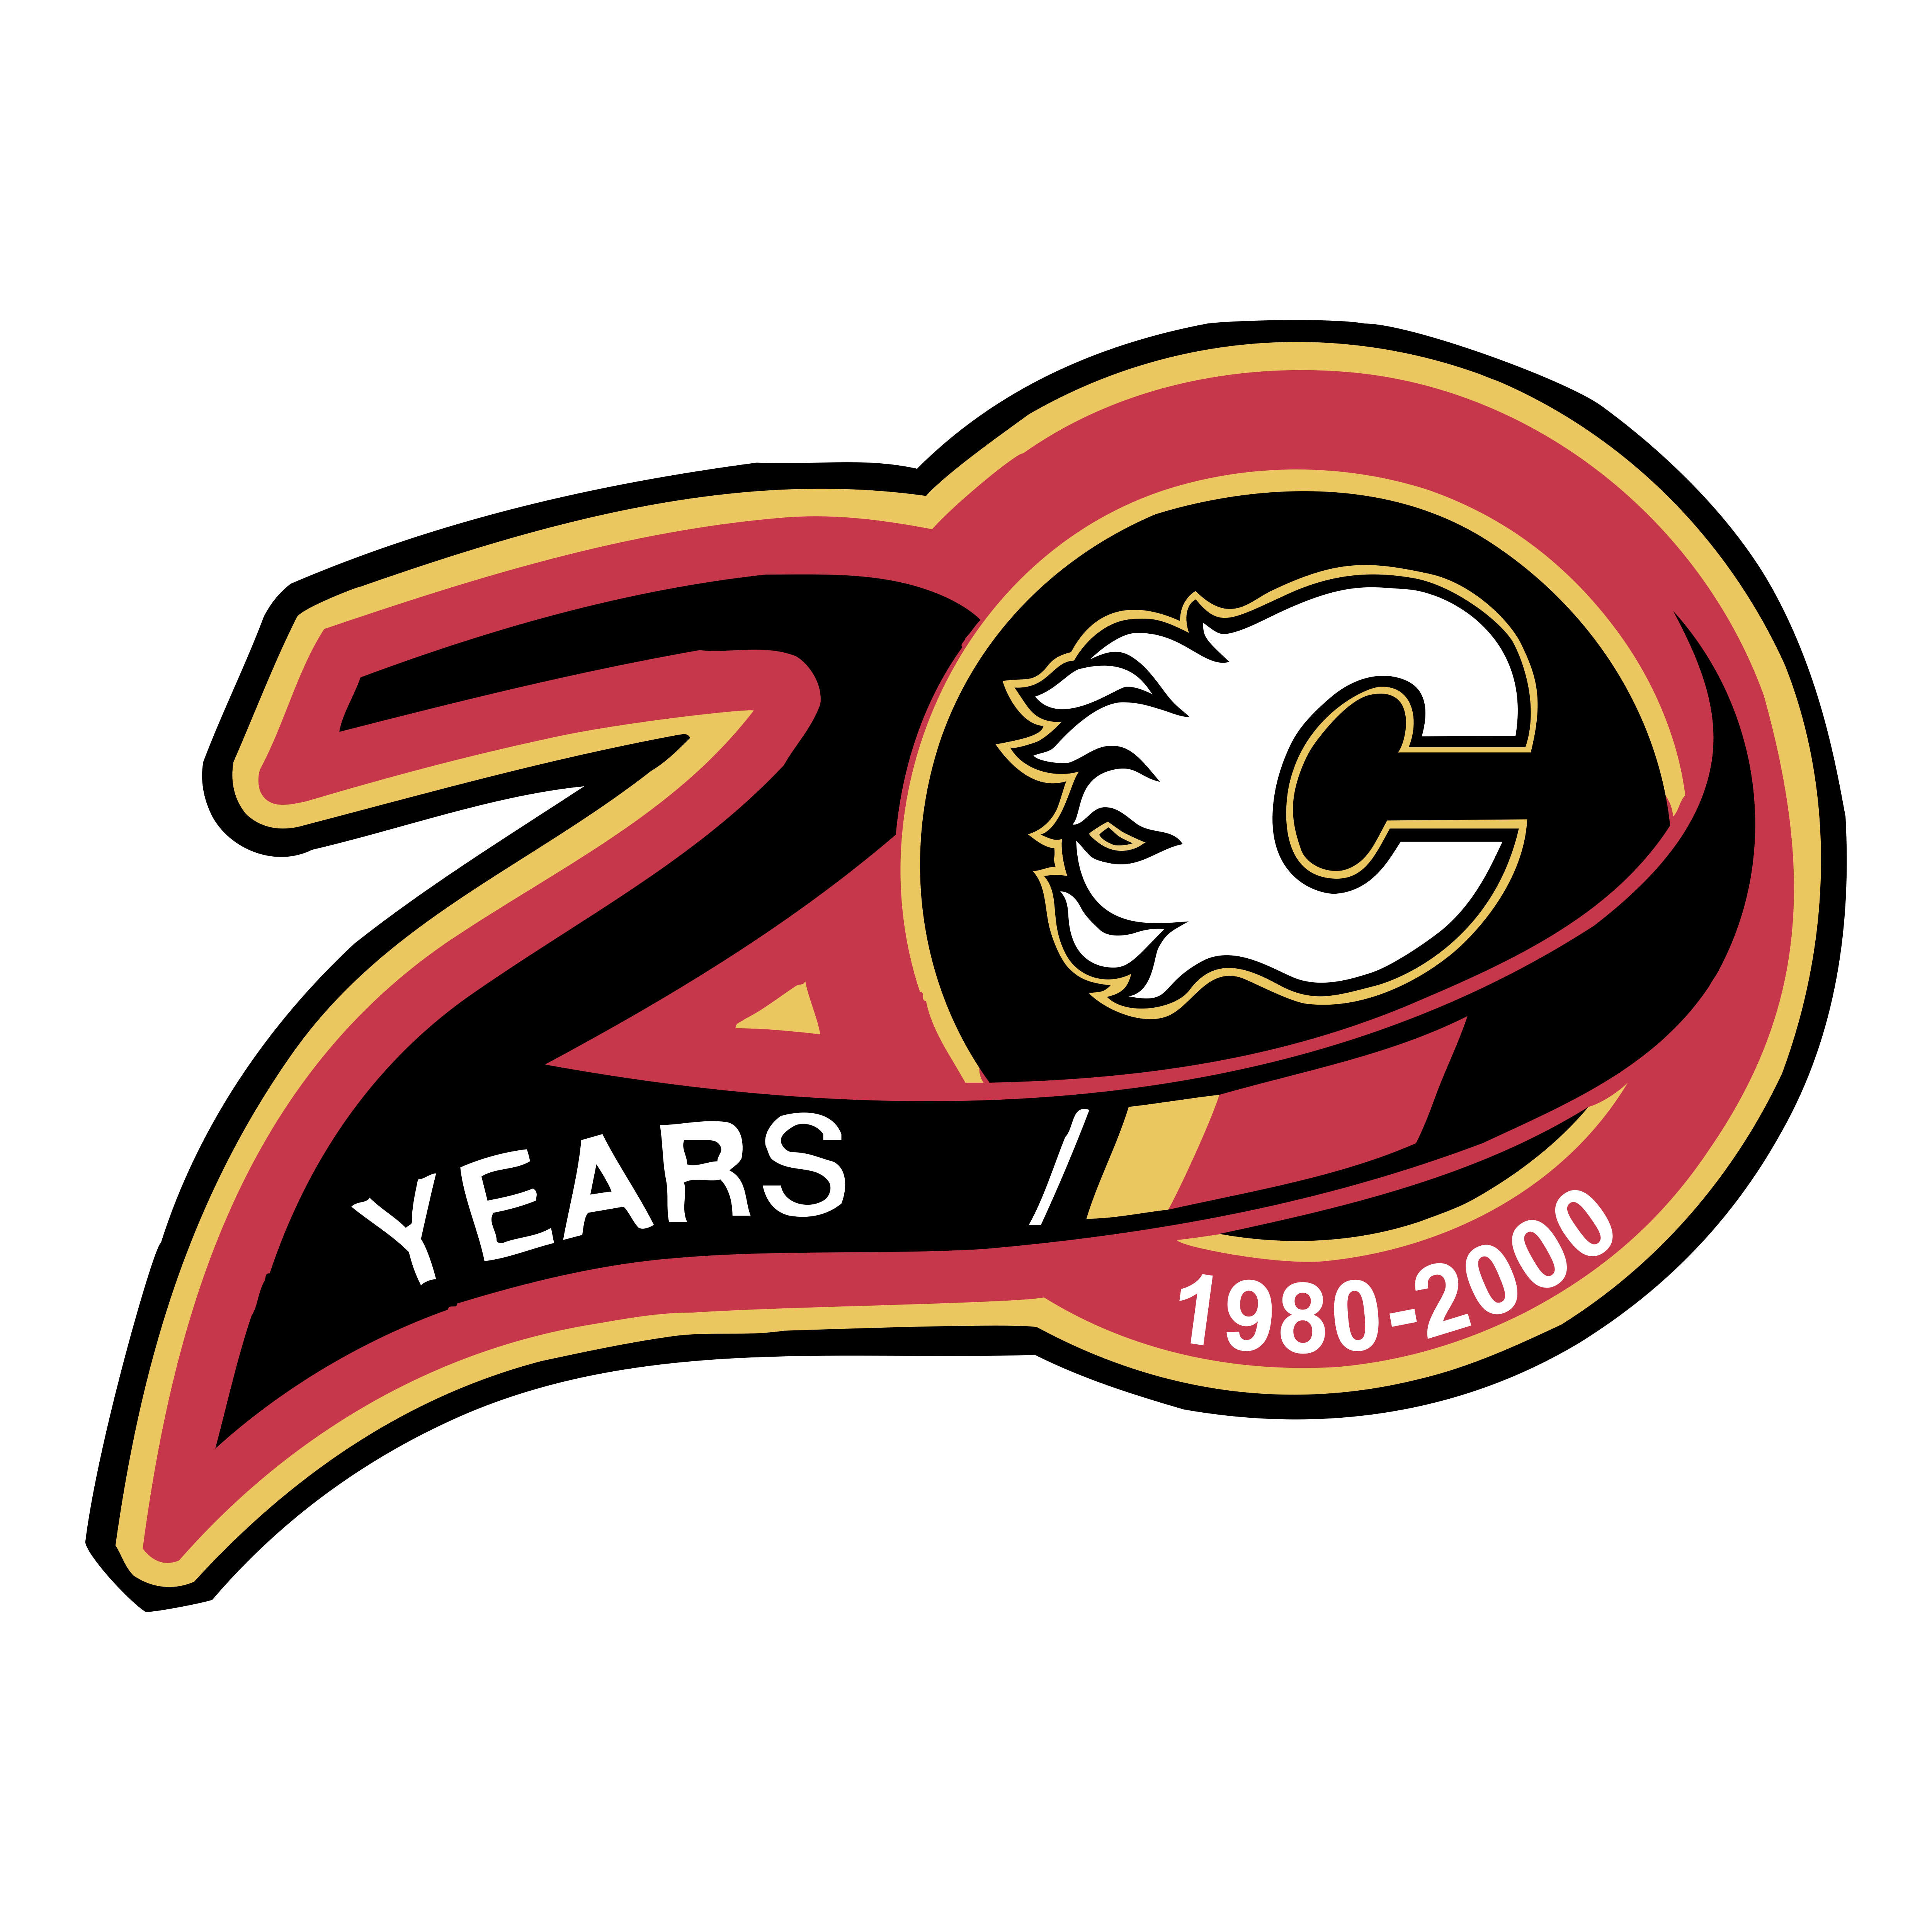 Calgary Flames - Logos Download